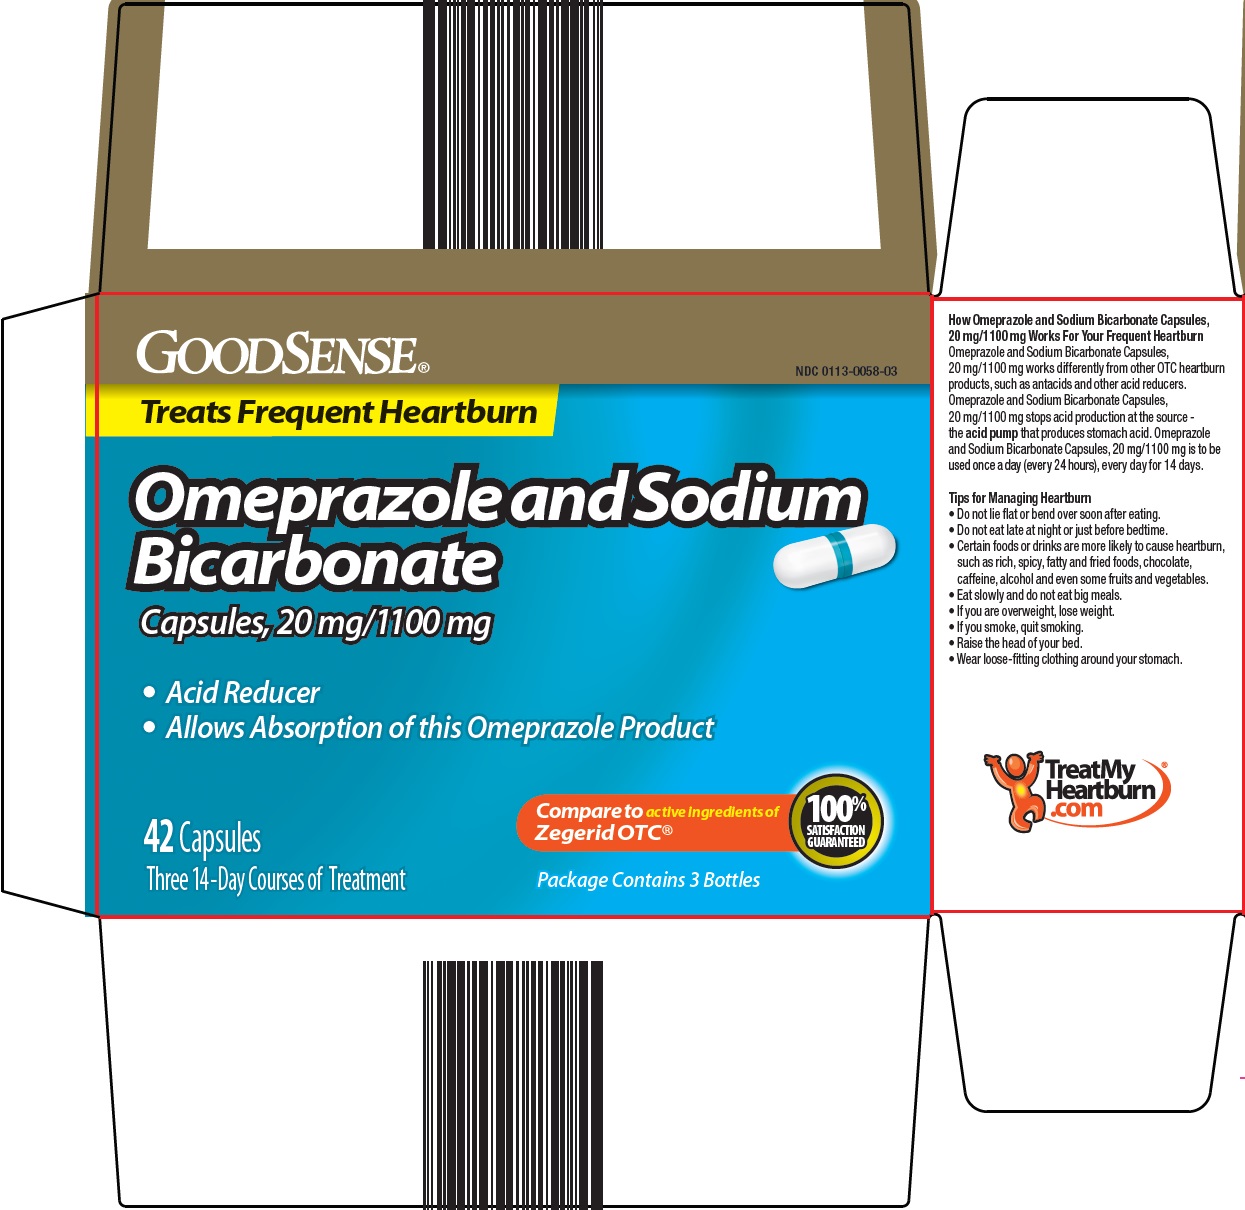 732-c2-92-omeprazole-and-sodium-bicarbonate-1.jpg